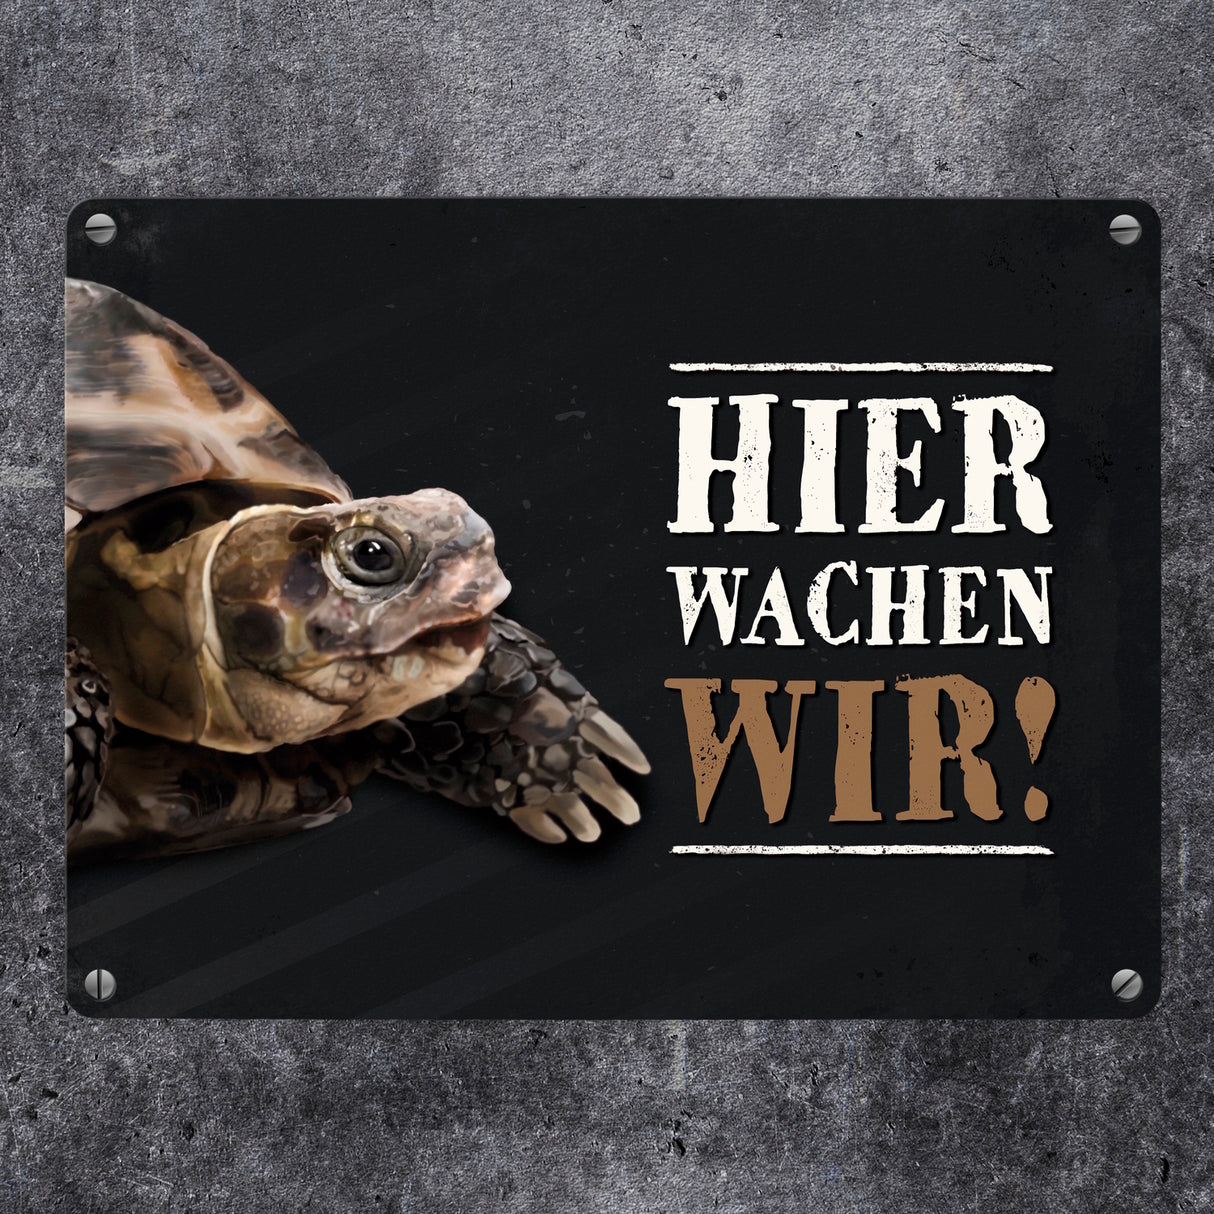 Metallschild mit Schildkröte Motiv und Spruch: Hier wachen wir!